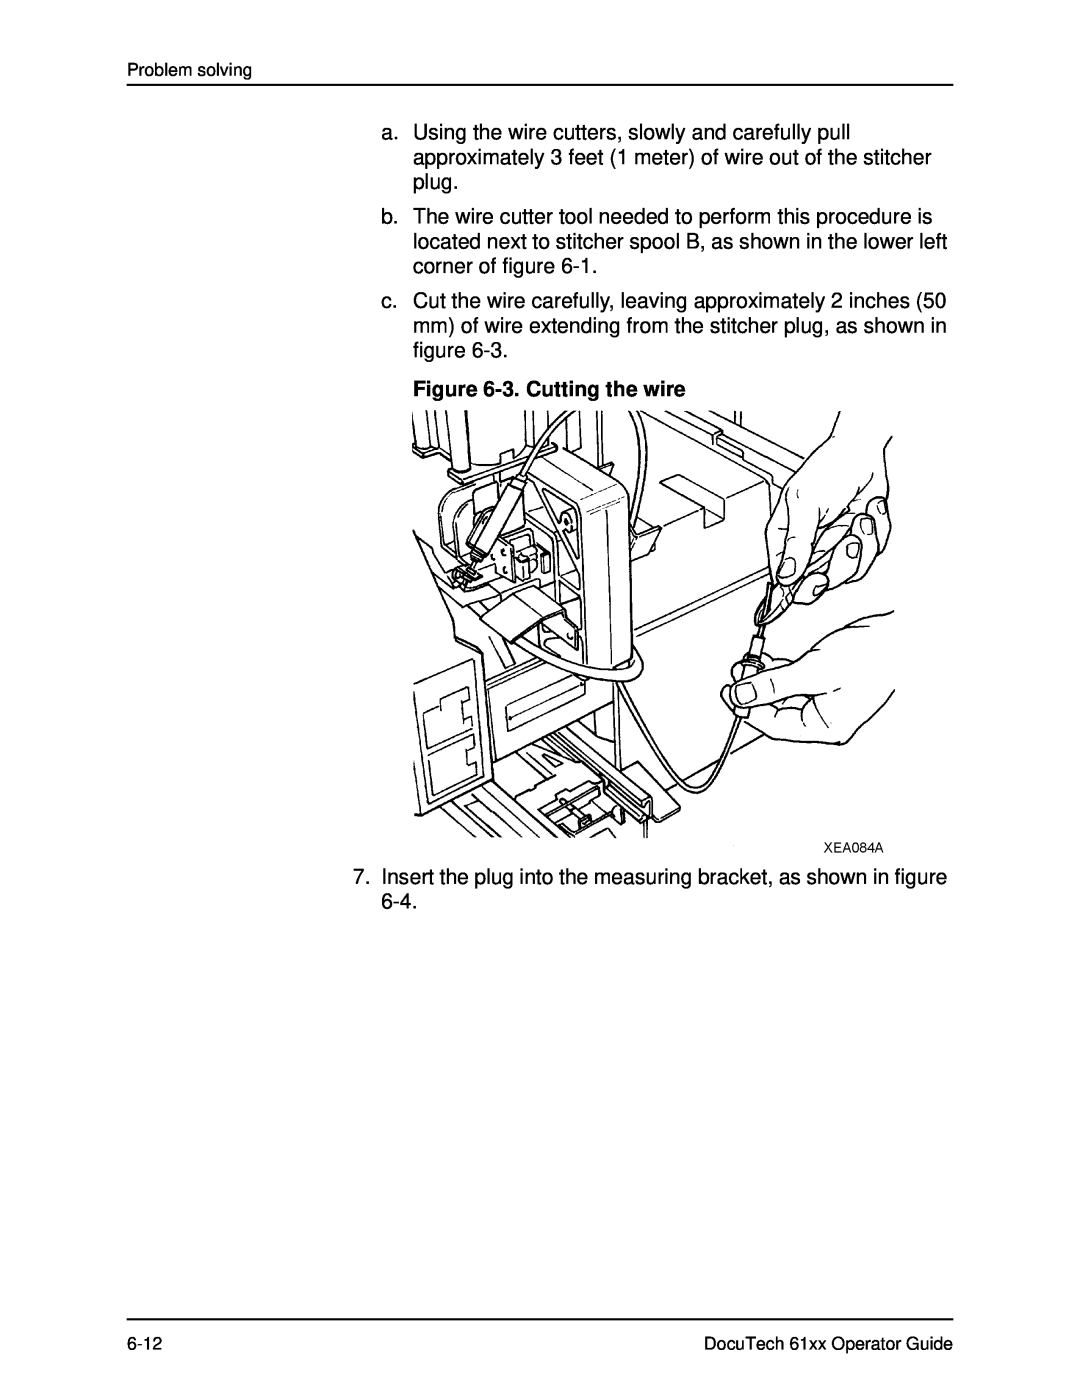 Xerox 61xx manual 3. Cutting the wire 